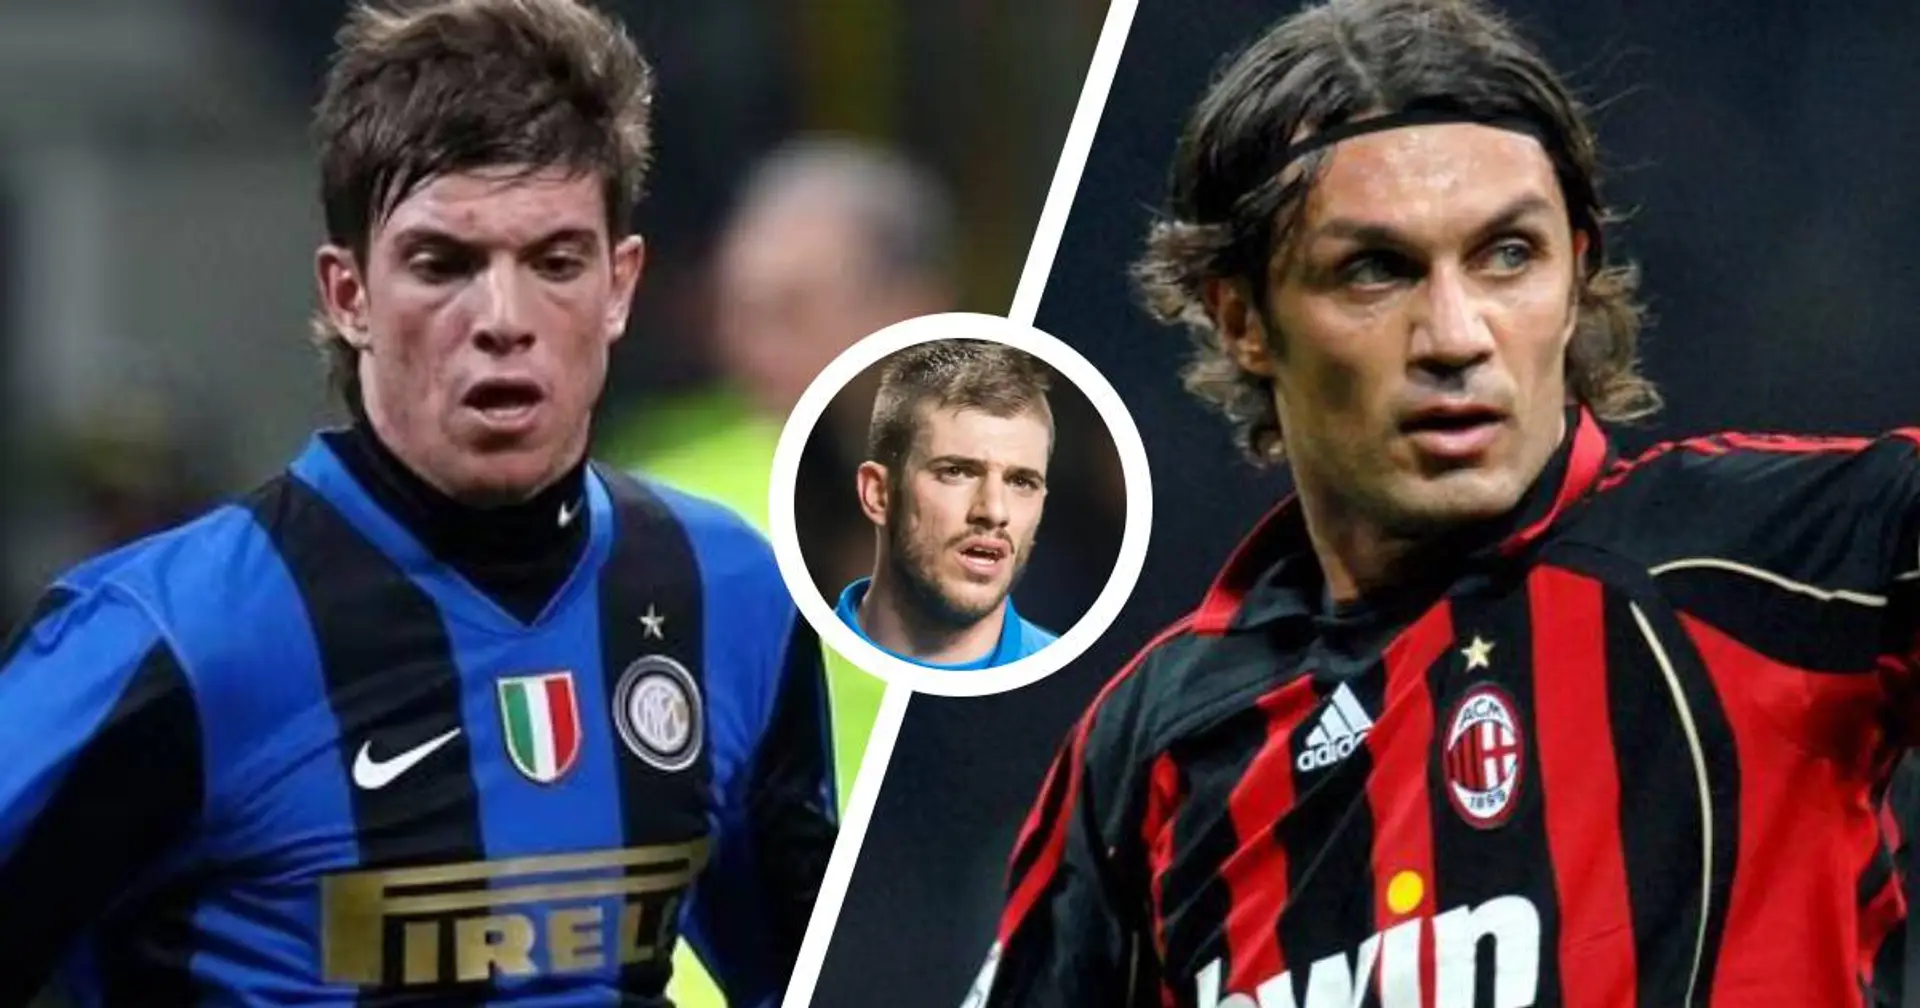 "Volevo essere il Maldini dei nerazzurri": Santon a cuore aperto, l'ex Inter ha detto addio al calcio a 31 anni 